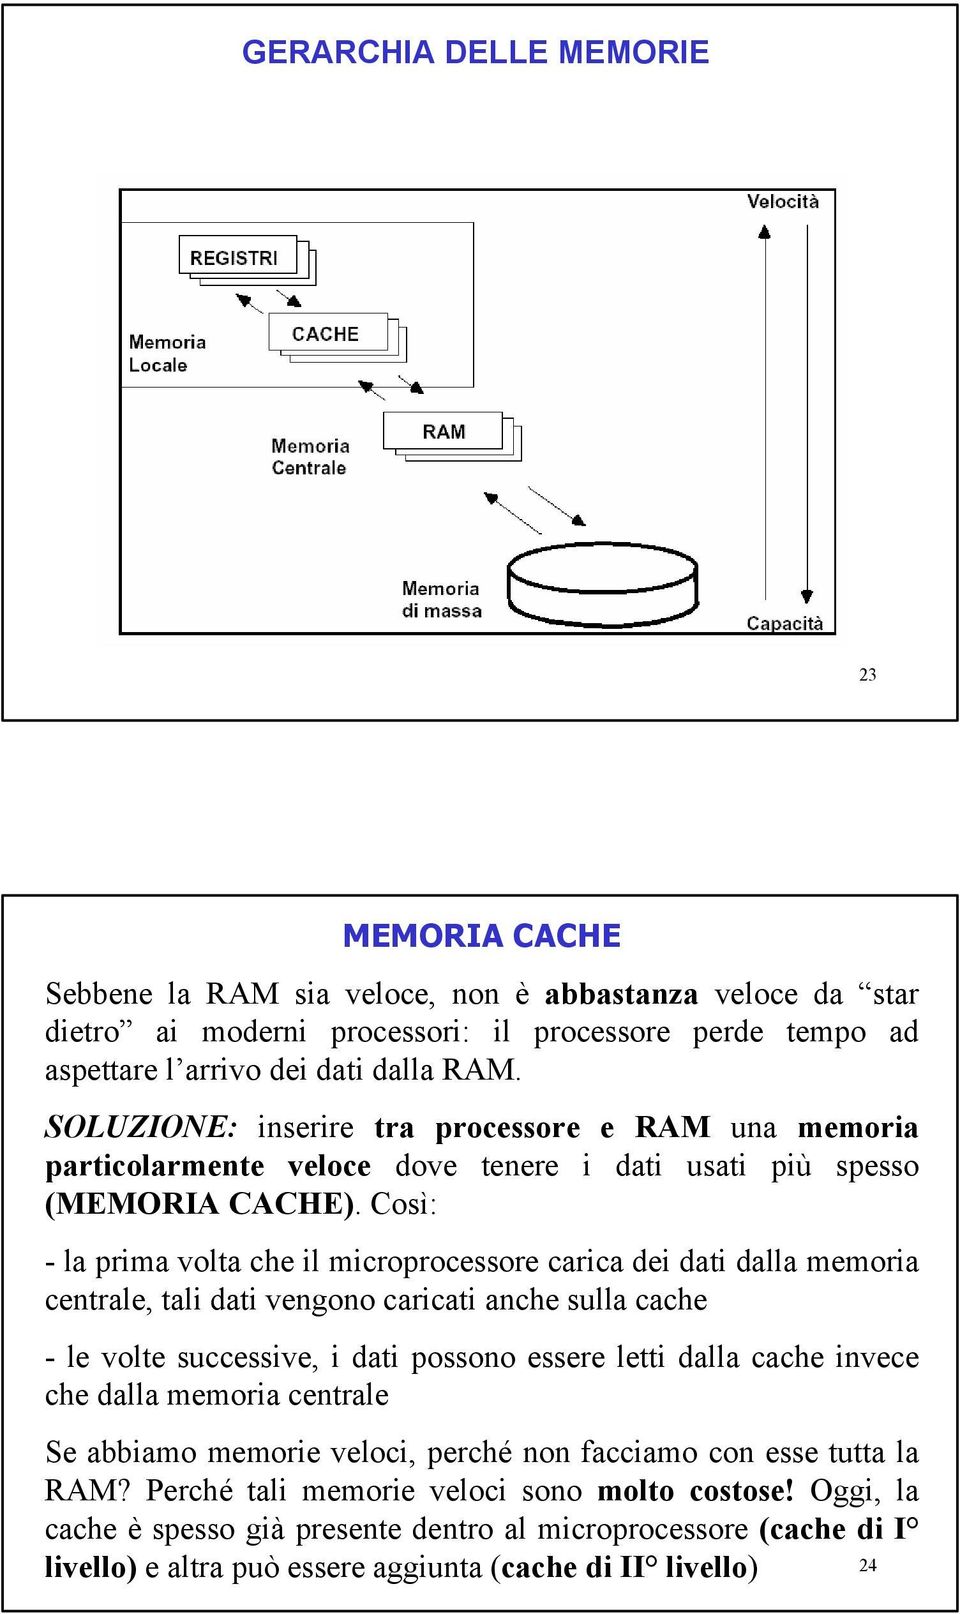 Così: - la prima volta che il microprocessore carica dei dati dalla memoria centrale, tali dati vengono caricati anche sulla cache - le volte successive, i dati possono essere letti dalla cache